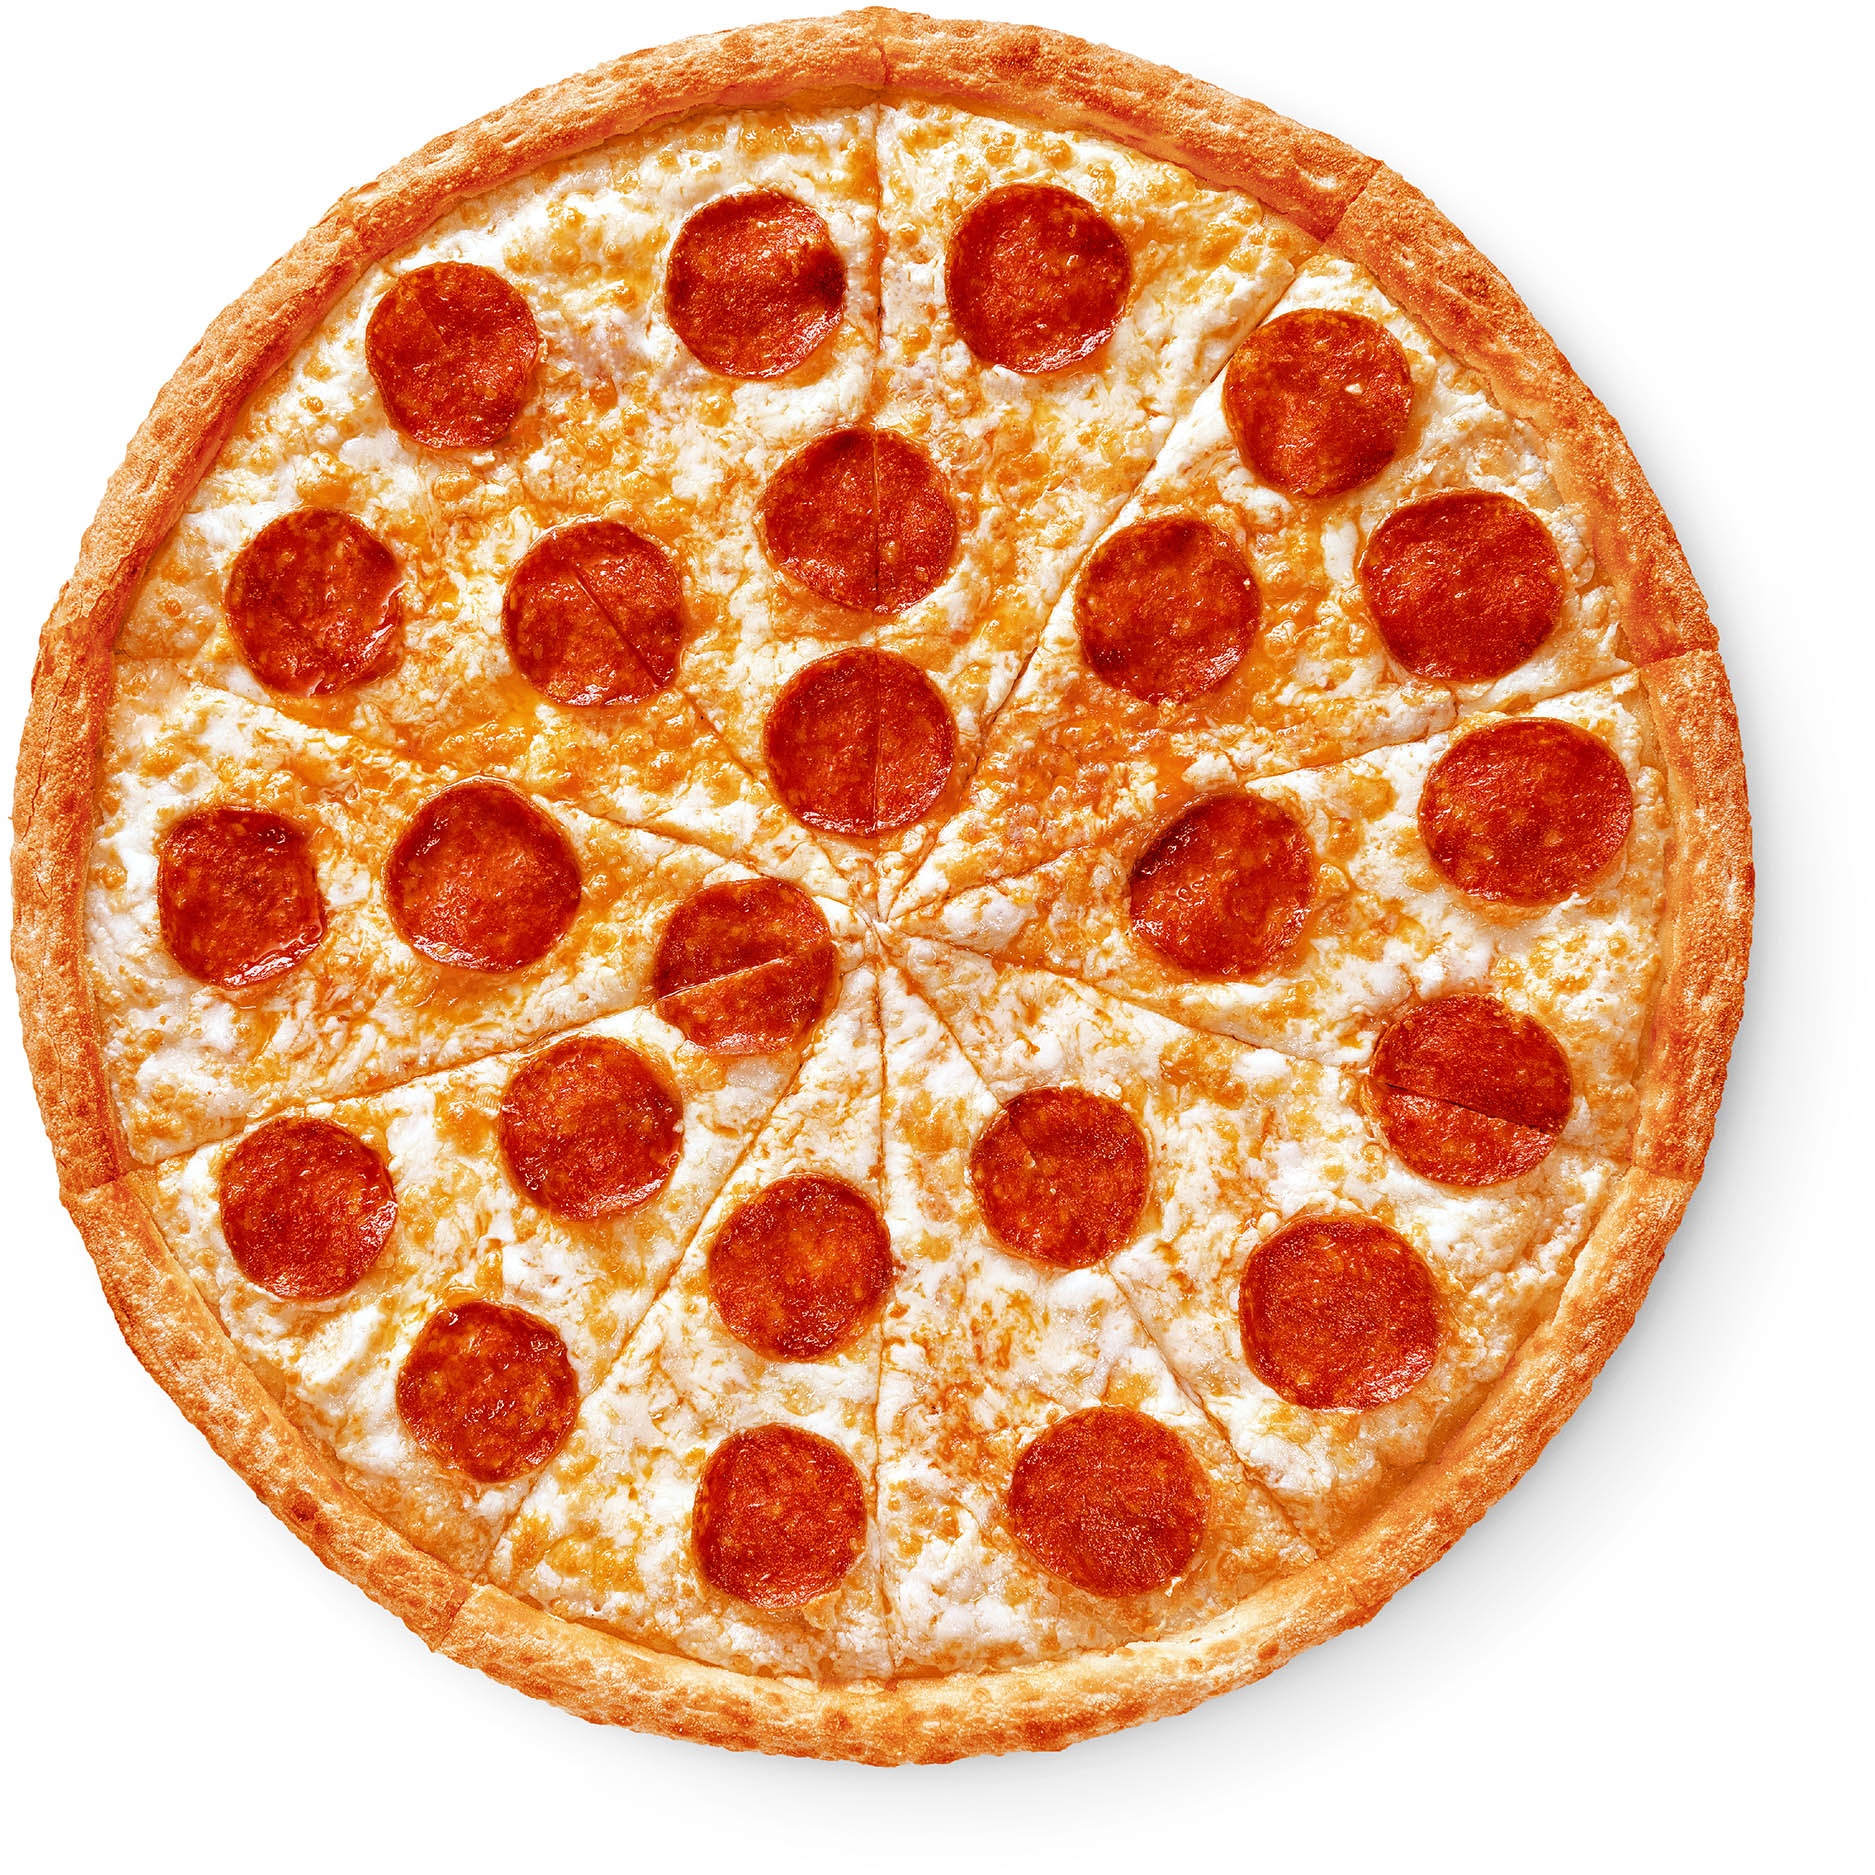 состав пицца пепперони классическая фото 74